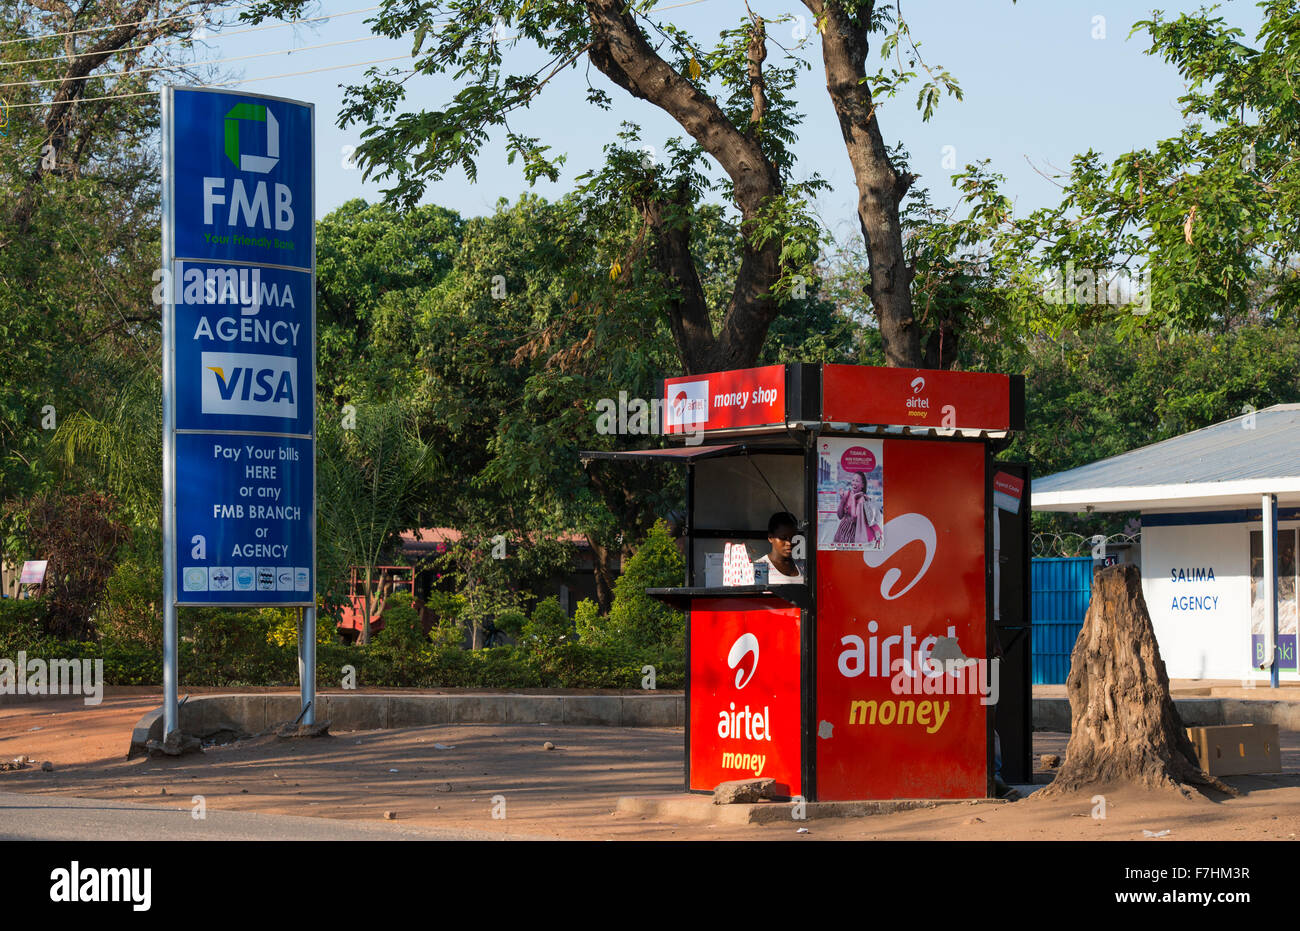 Il Malawi, salima, denaro con Trasferimento di denaro di Airtel Airtel è un indiano società di telefonia mobile in contrasto VISA annuncio di FMB Bank Foto Stock